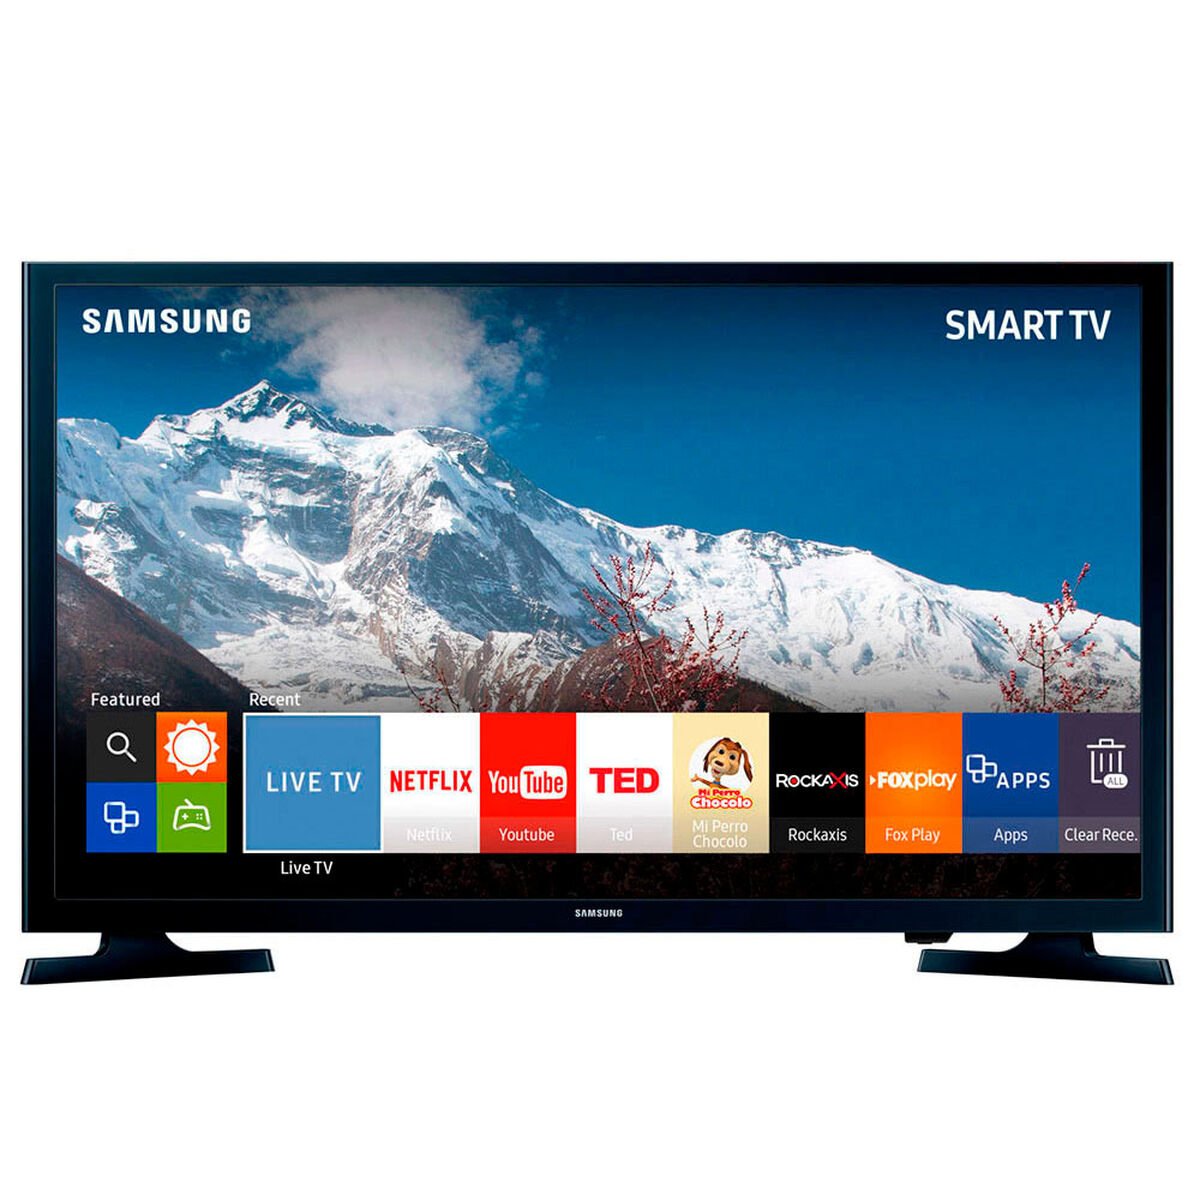 Озон телевизоры смарт тв. Samsung led 32 Smart TV. Led телевизор Samsung ue40j5200. Samsung Smart TV 40. Самсунг led 40 смарт ТВ.